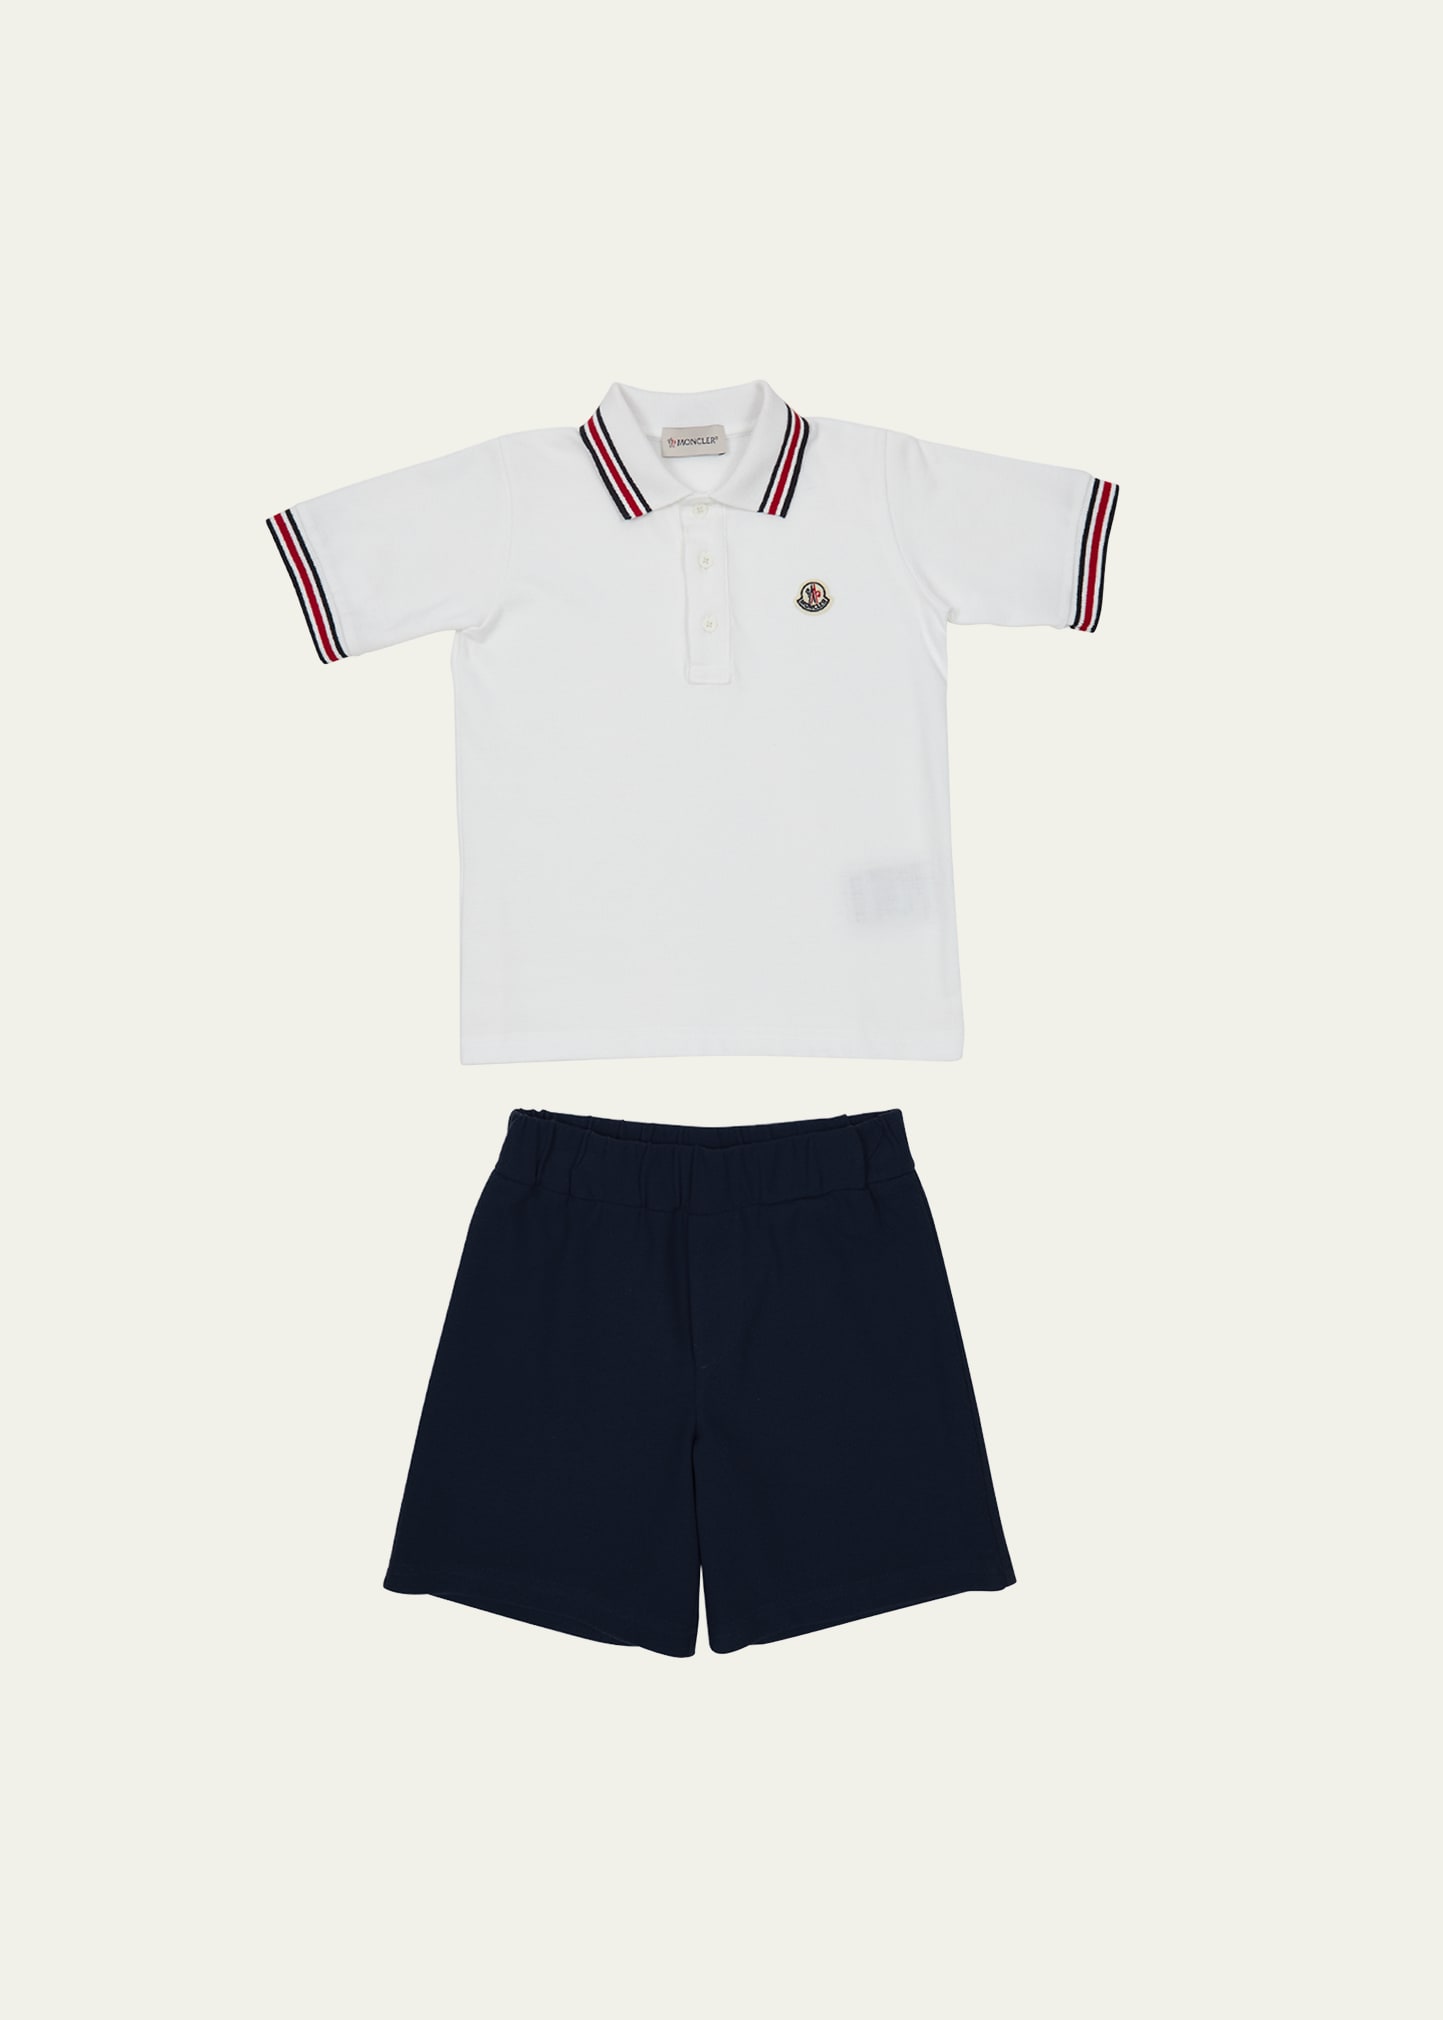 Moncler Kids' Boy's Polo Shirt W/ Shorts Set In Off White